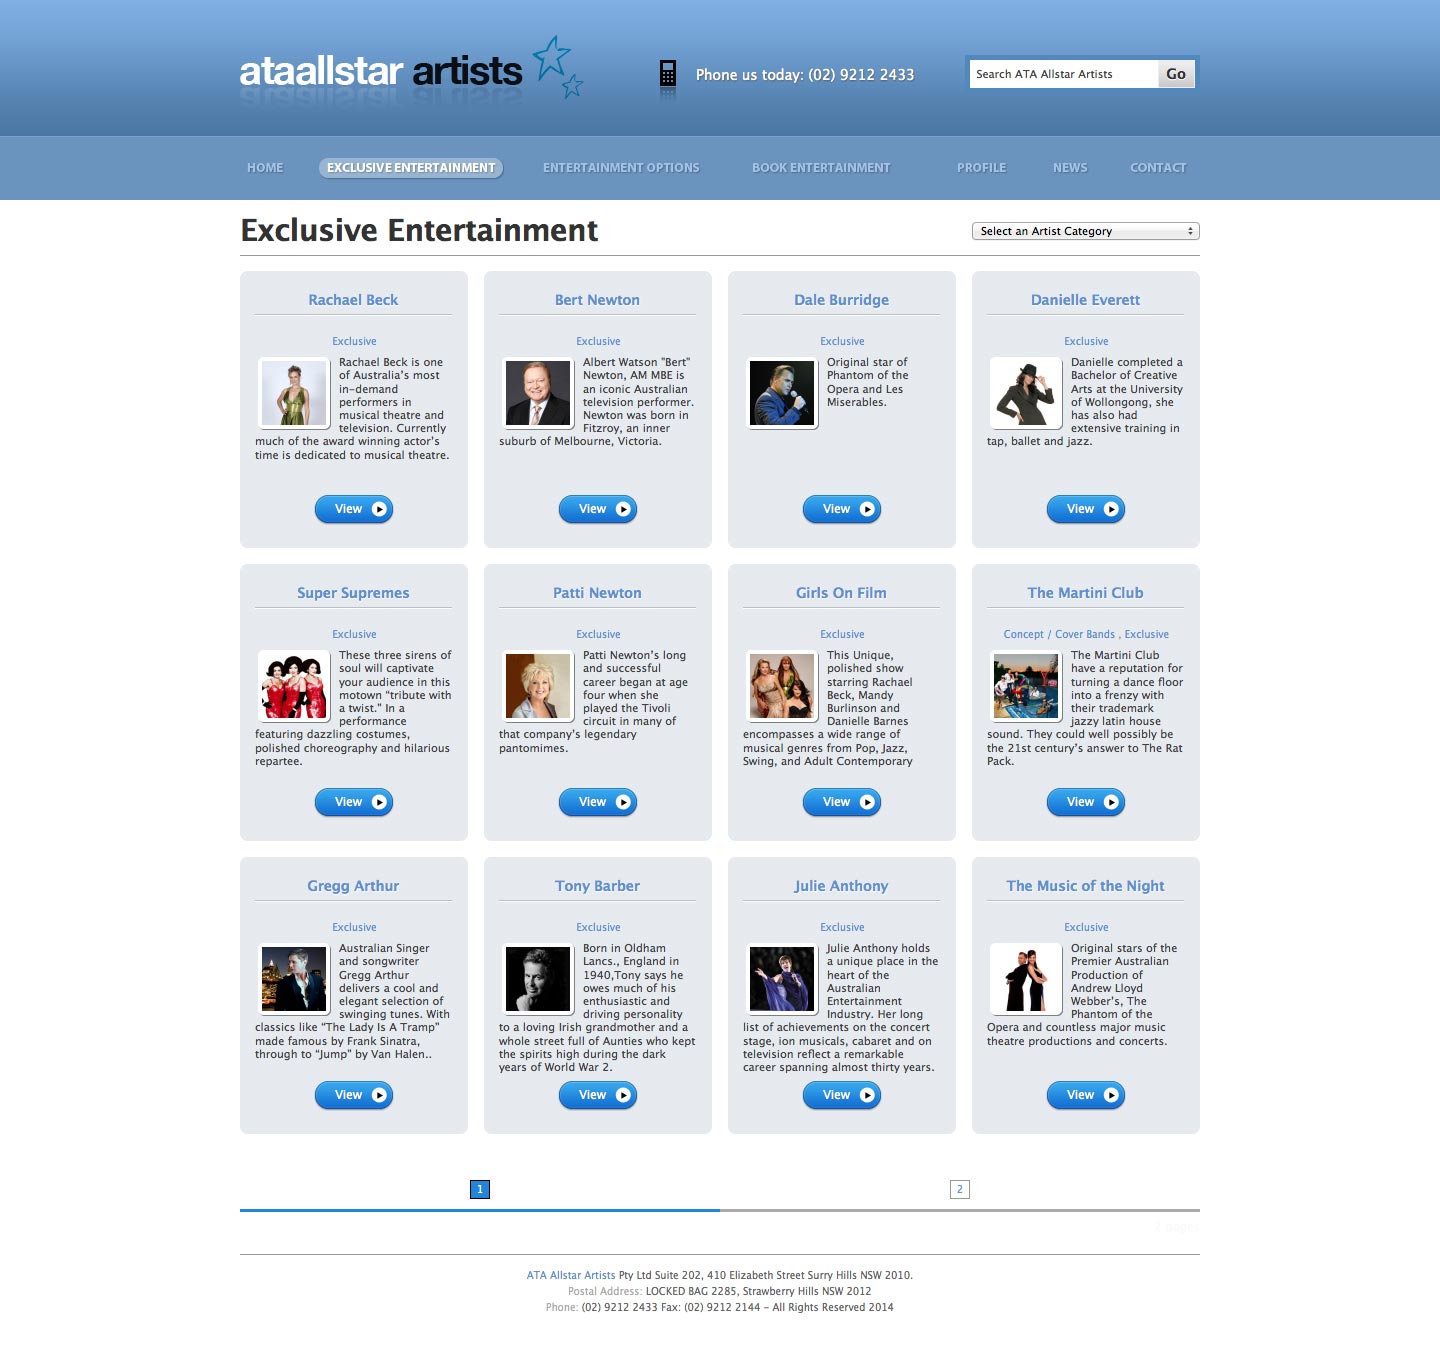 screenshot - ATA Allstar Artists - desktop